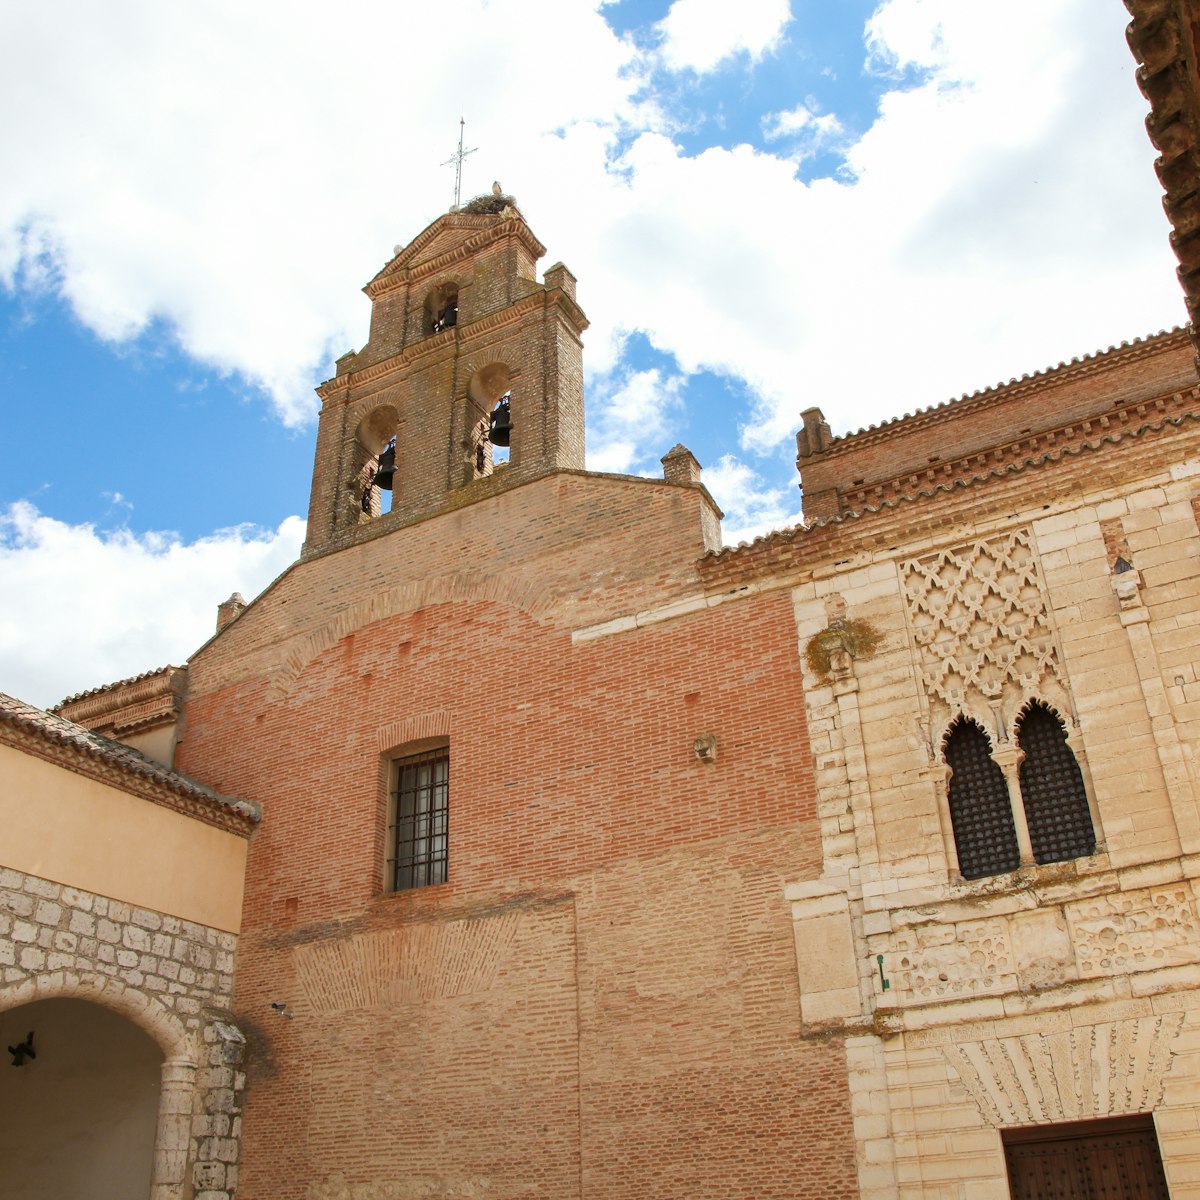 Convent of Santa Clara in Tordesillas.